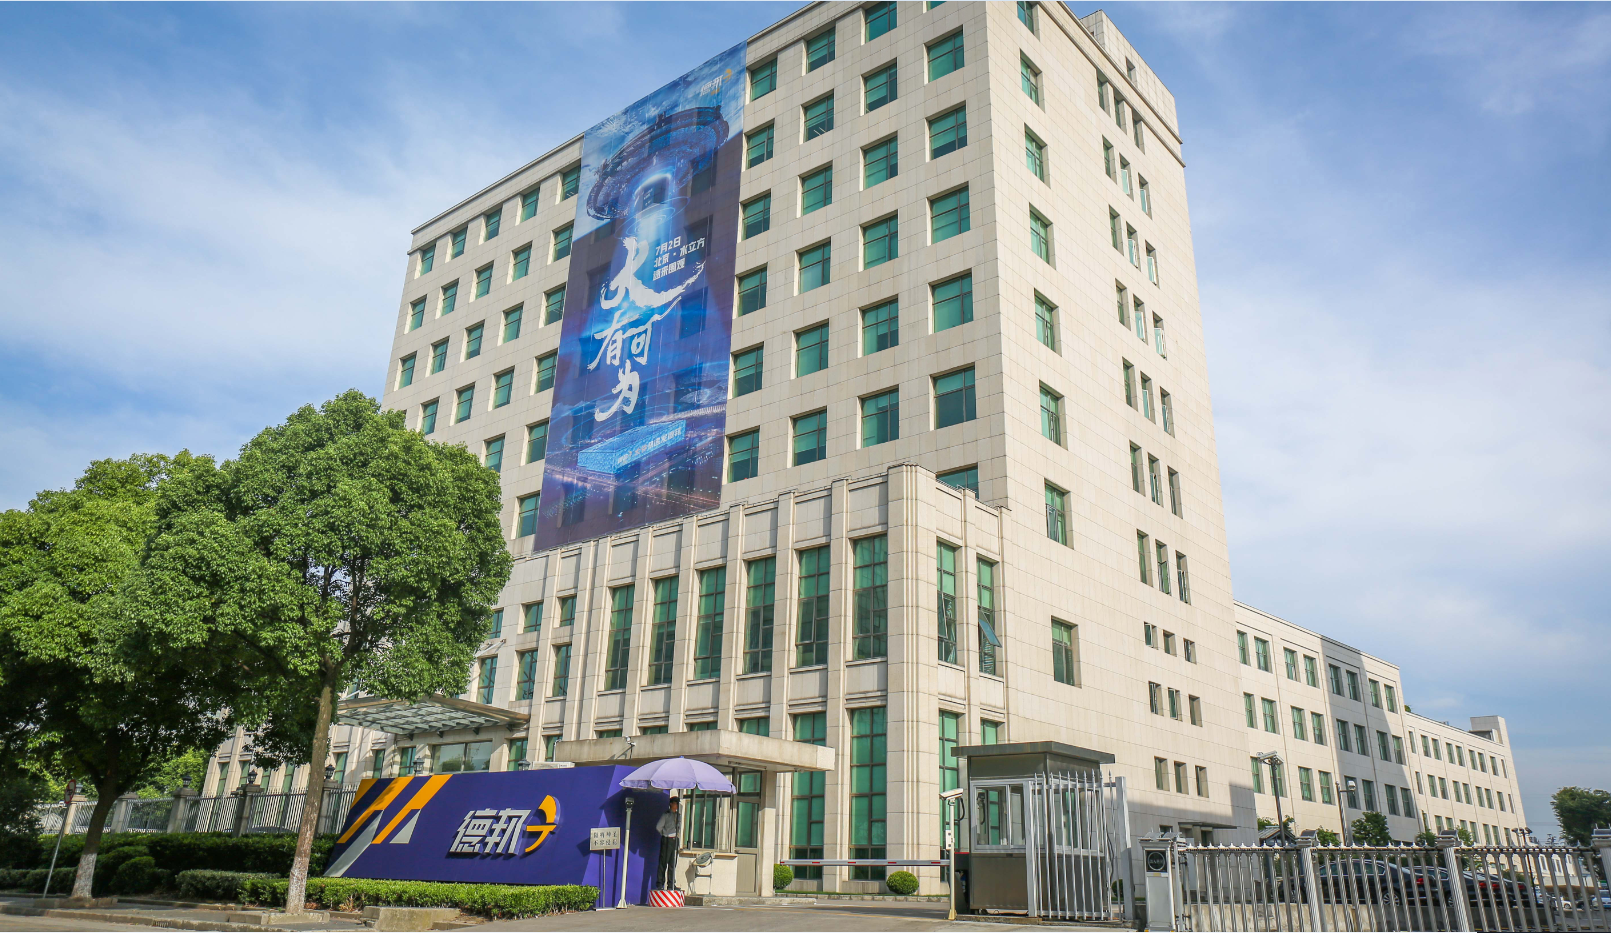 德邦总部大楼外现科幻巨幅海报